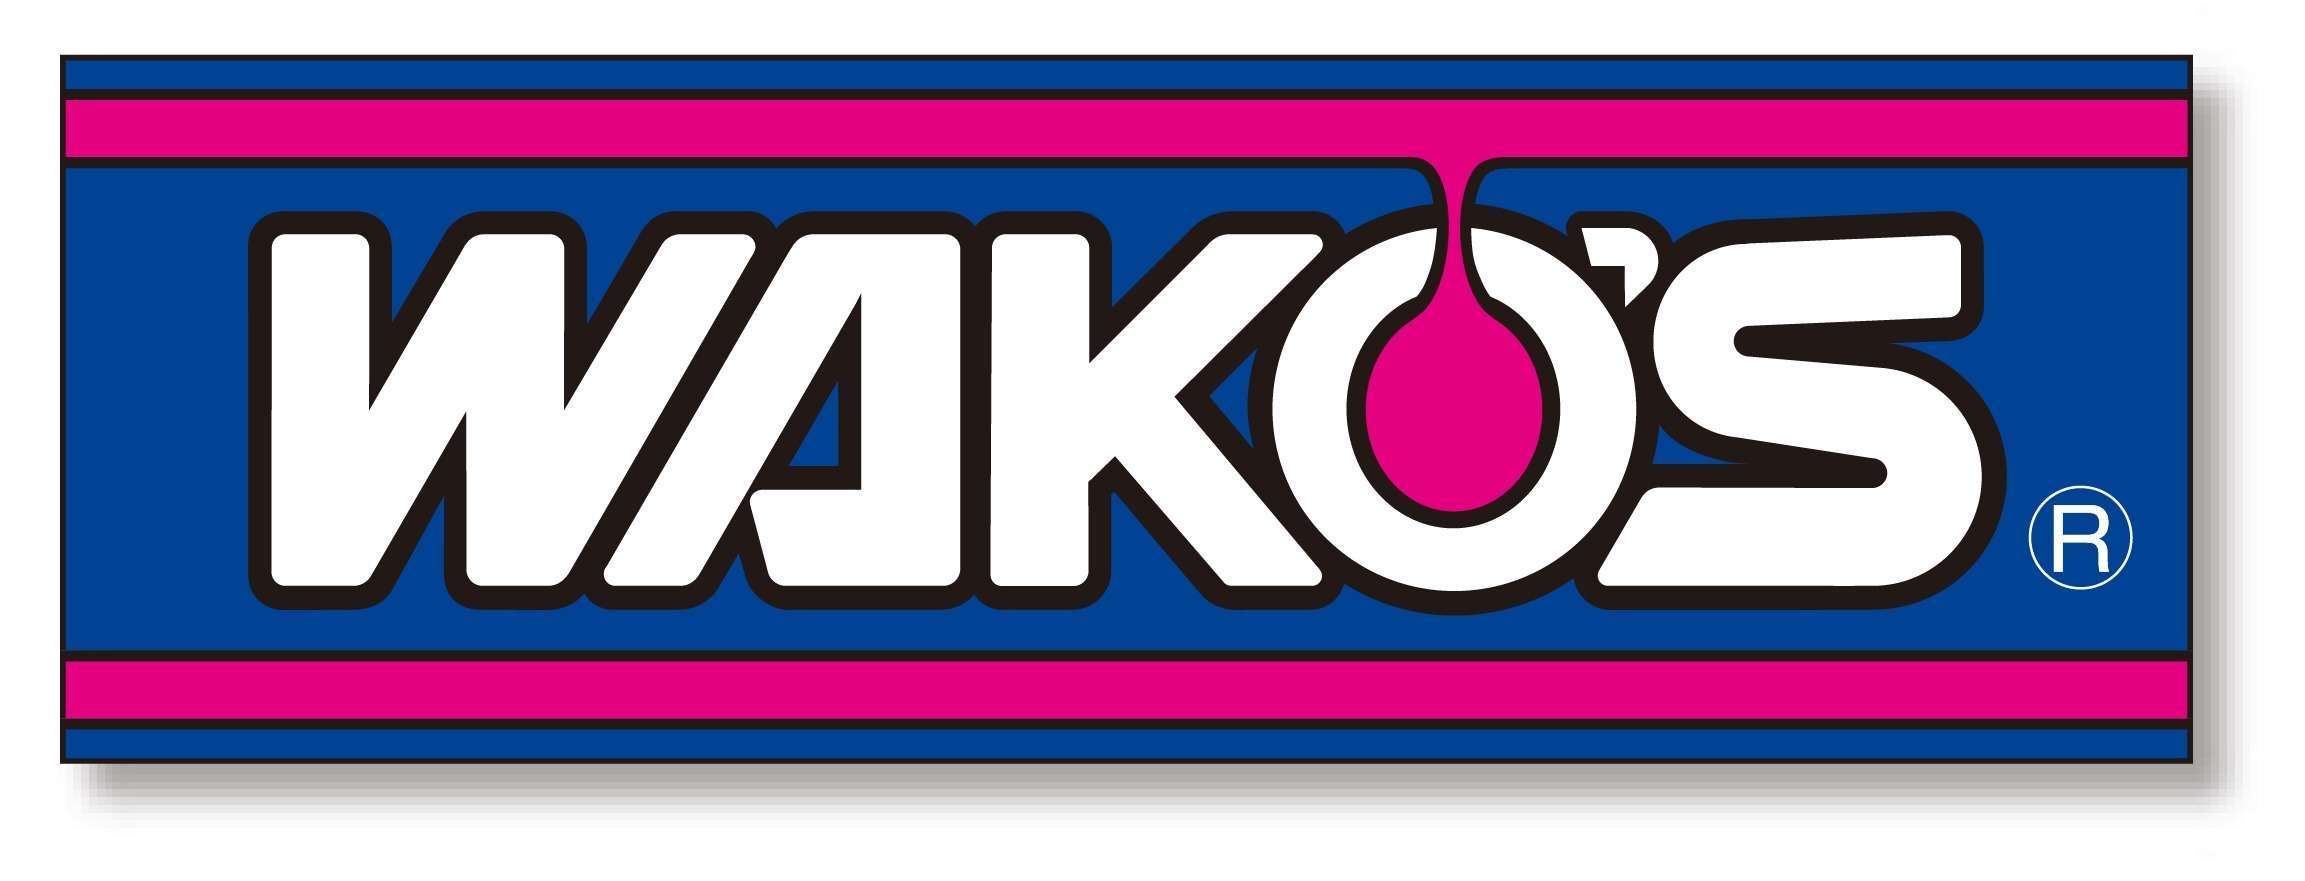 wakos